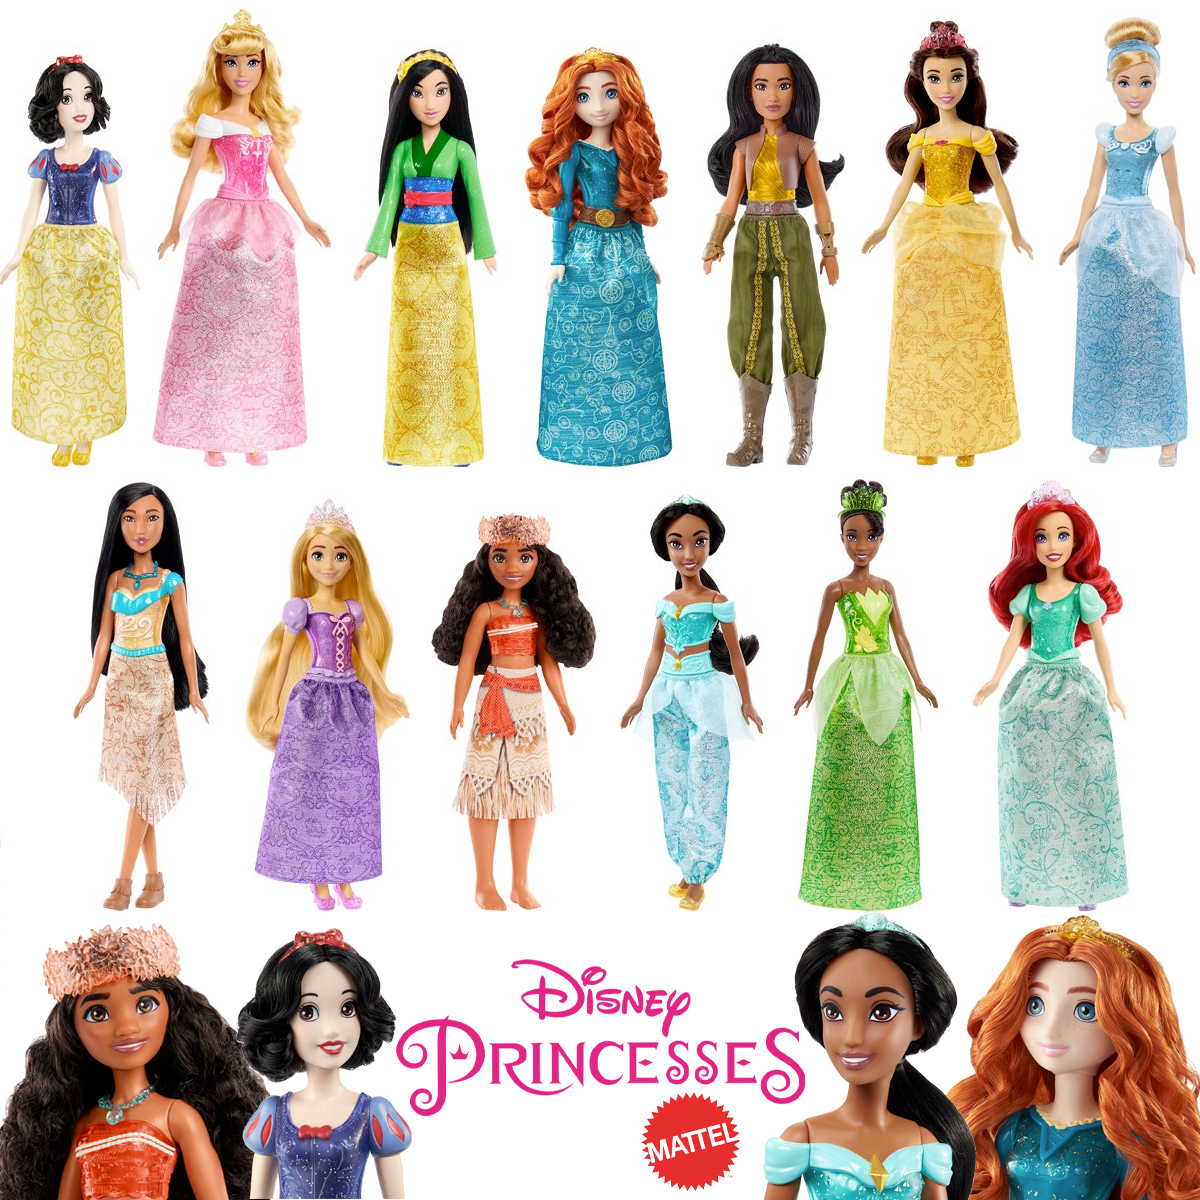 Funko Pop Princesas da Disney: 6 miniaturas de protagonistas